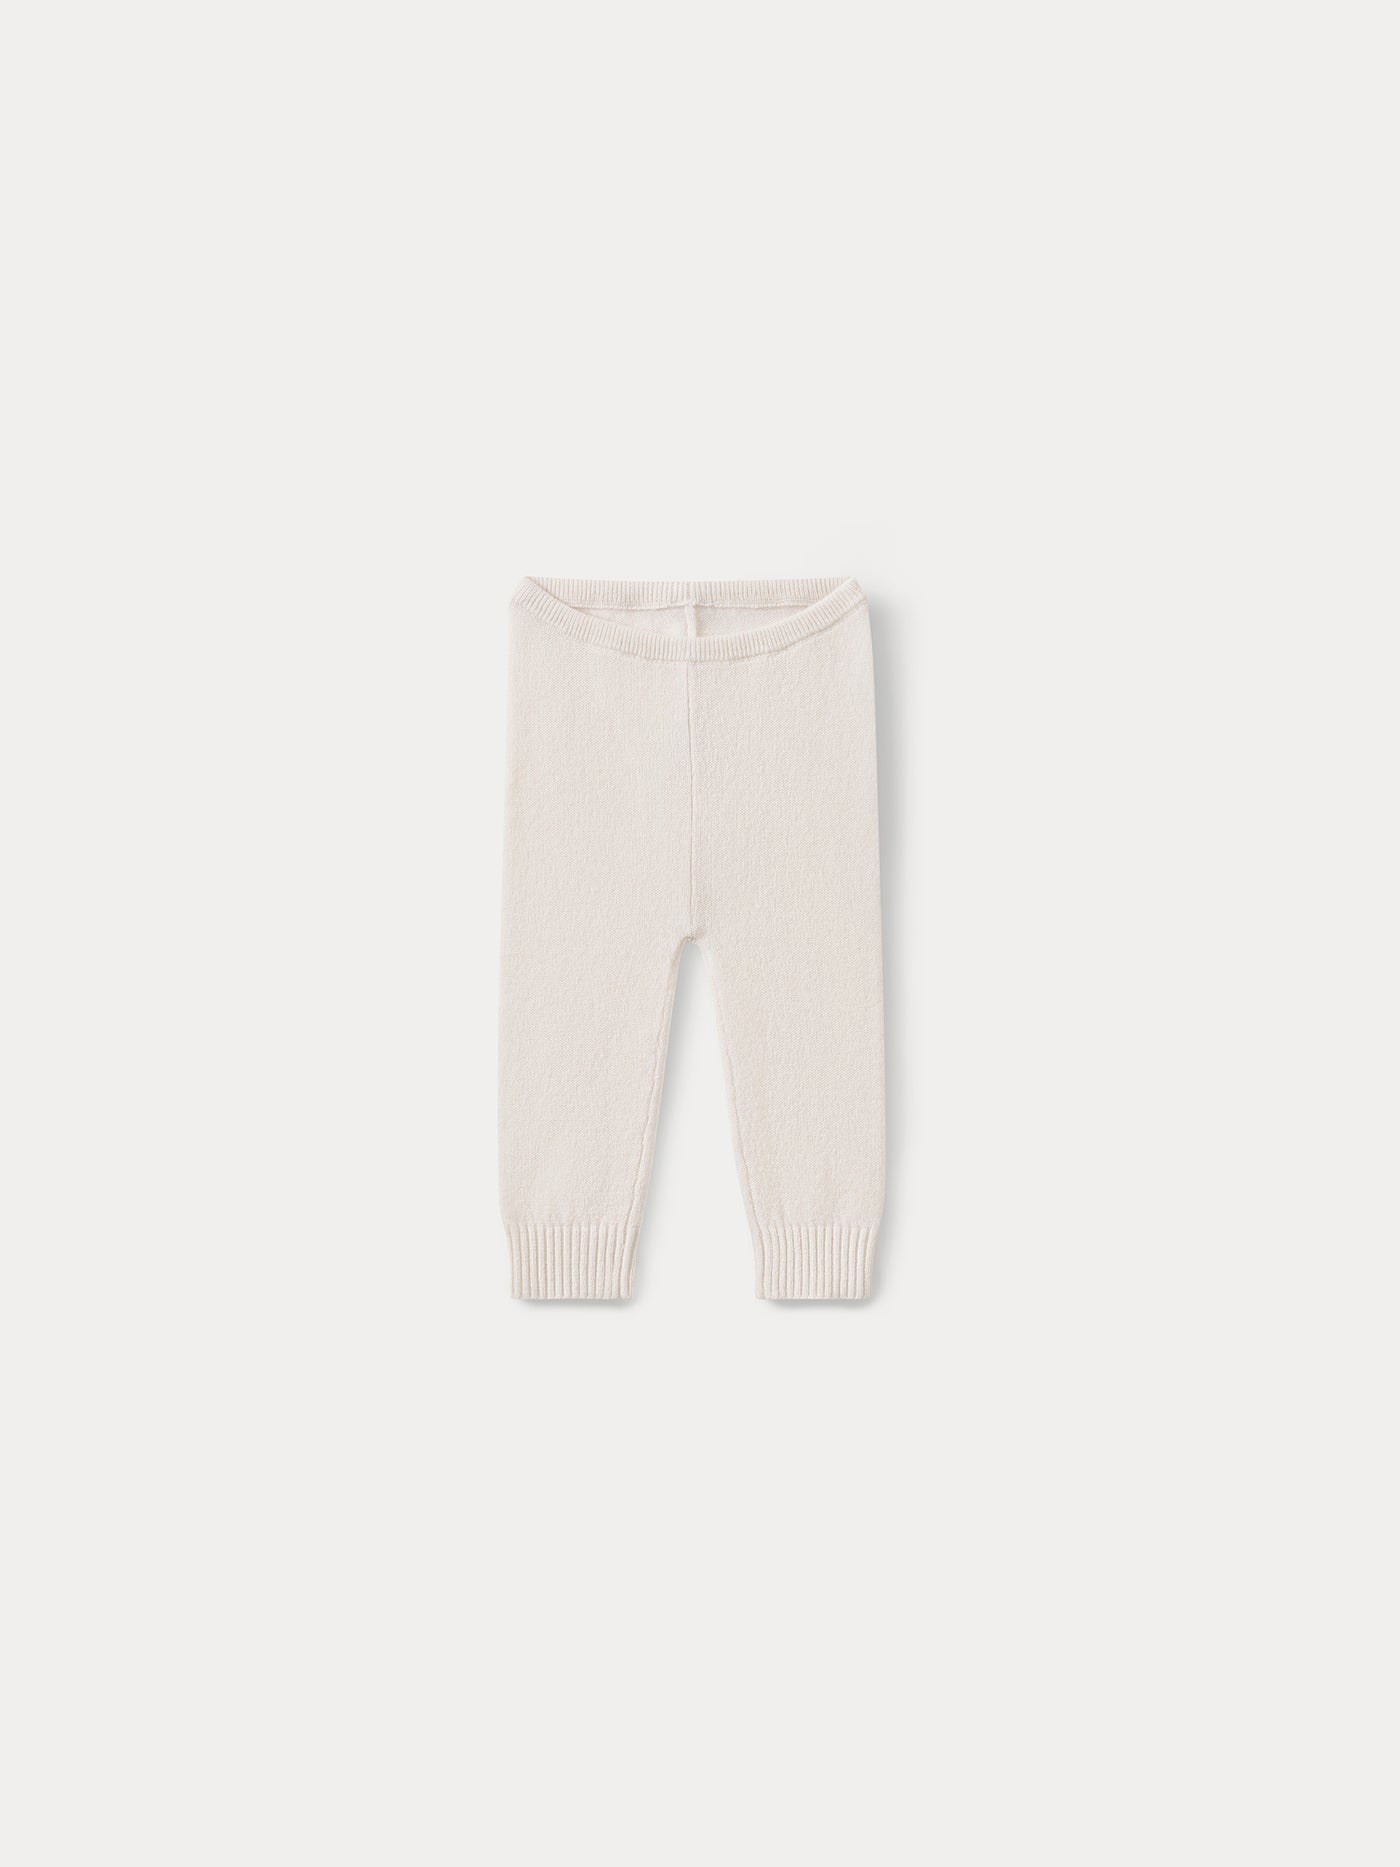 Cashmere baby leggings milk white  baby leggings and socks • Bonpoint